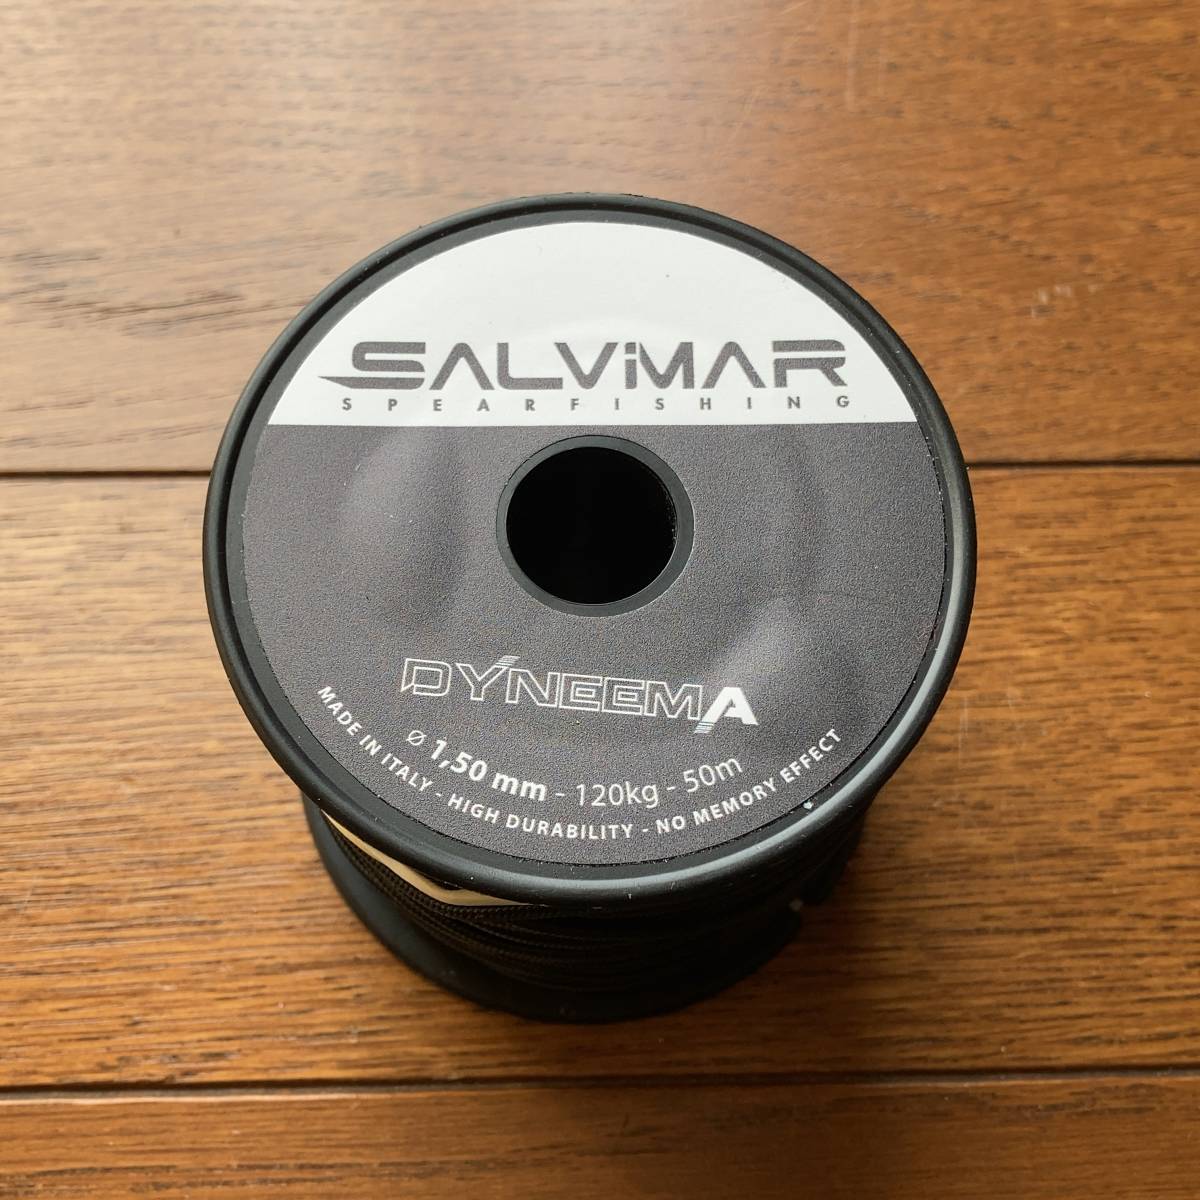 SALVIMAR(サルビマー)純正ダイニーマライン 黒 1.5mm 50m巻き★素潜り手銛魚突き